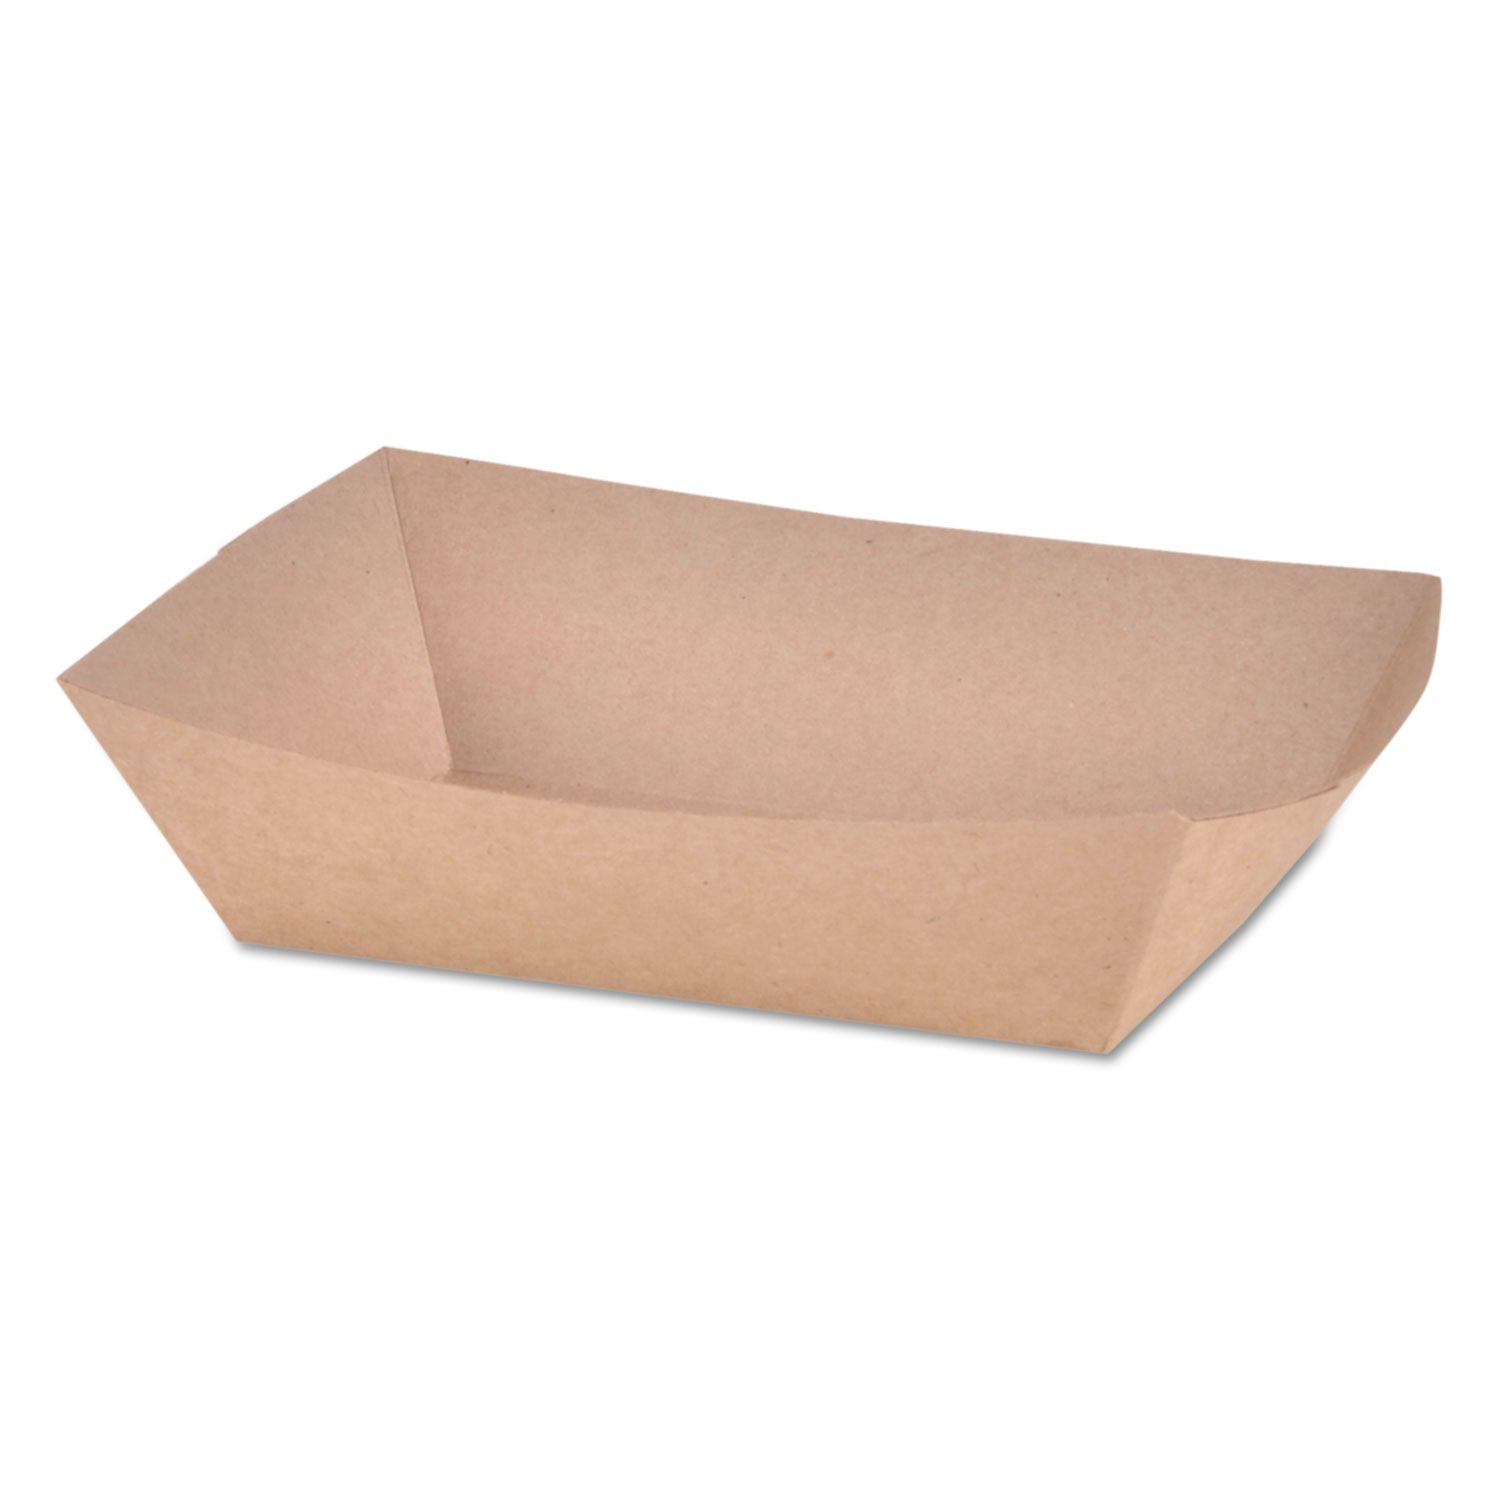 eco-food-trays-2-lb-capacity-brown-kraft-paper-1000-carton_sch0517 - 1